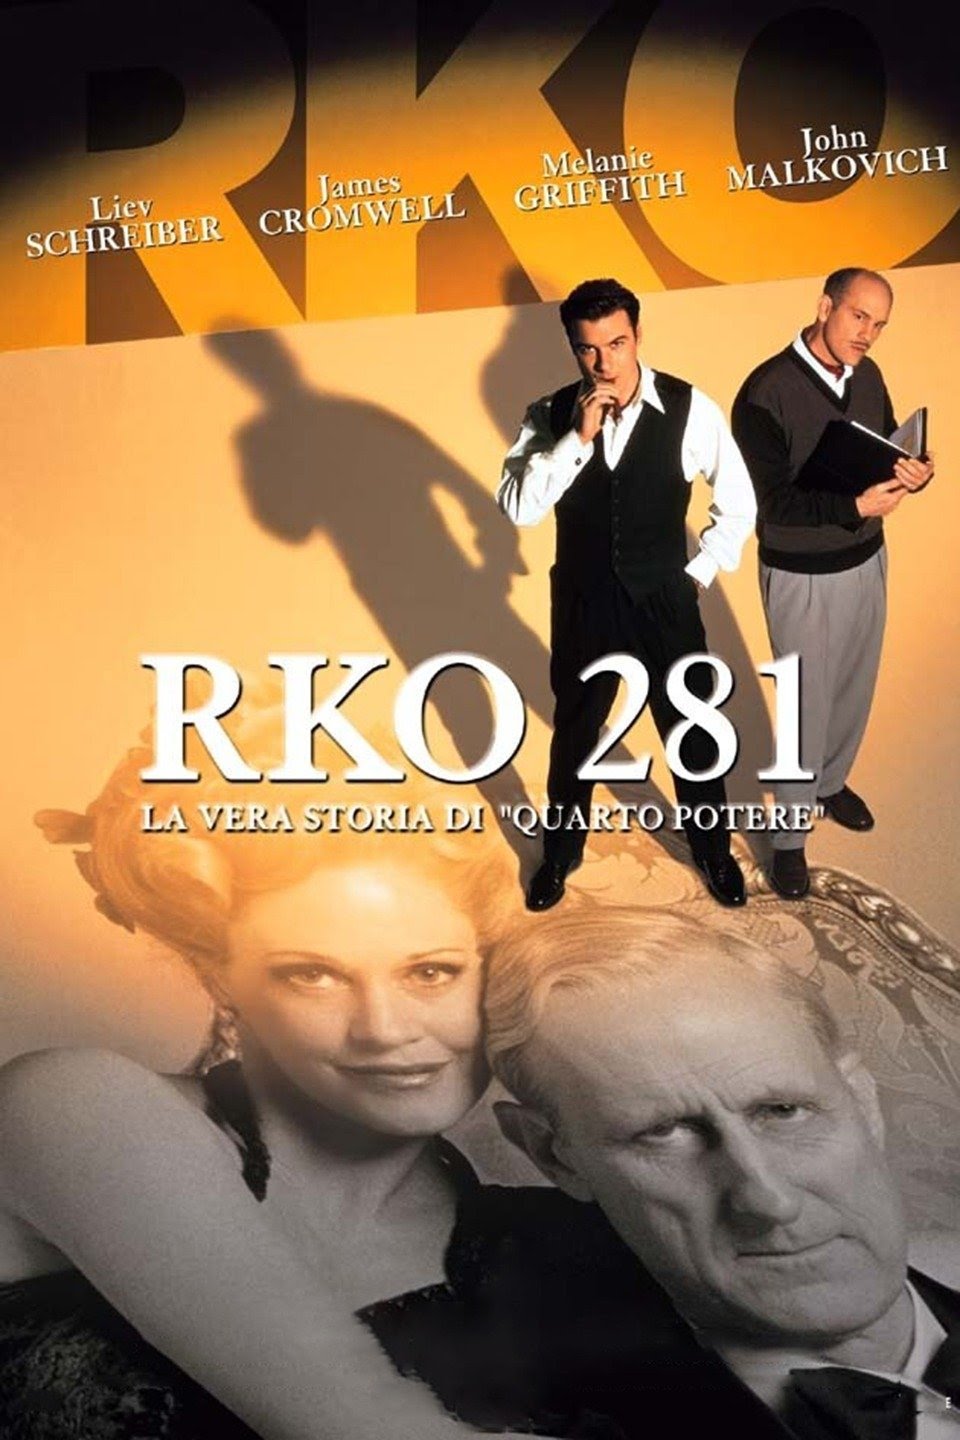 Rko 281 – La vera storia di Quarto potere (1999)